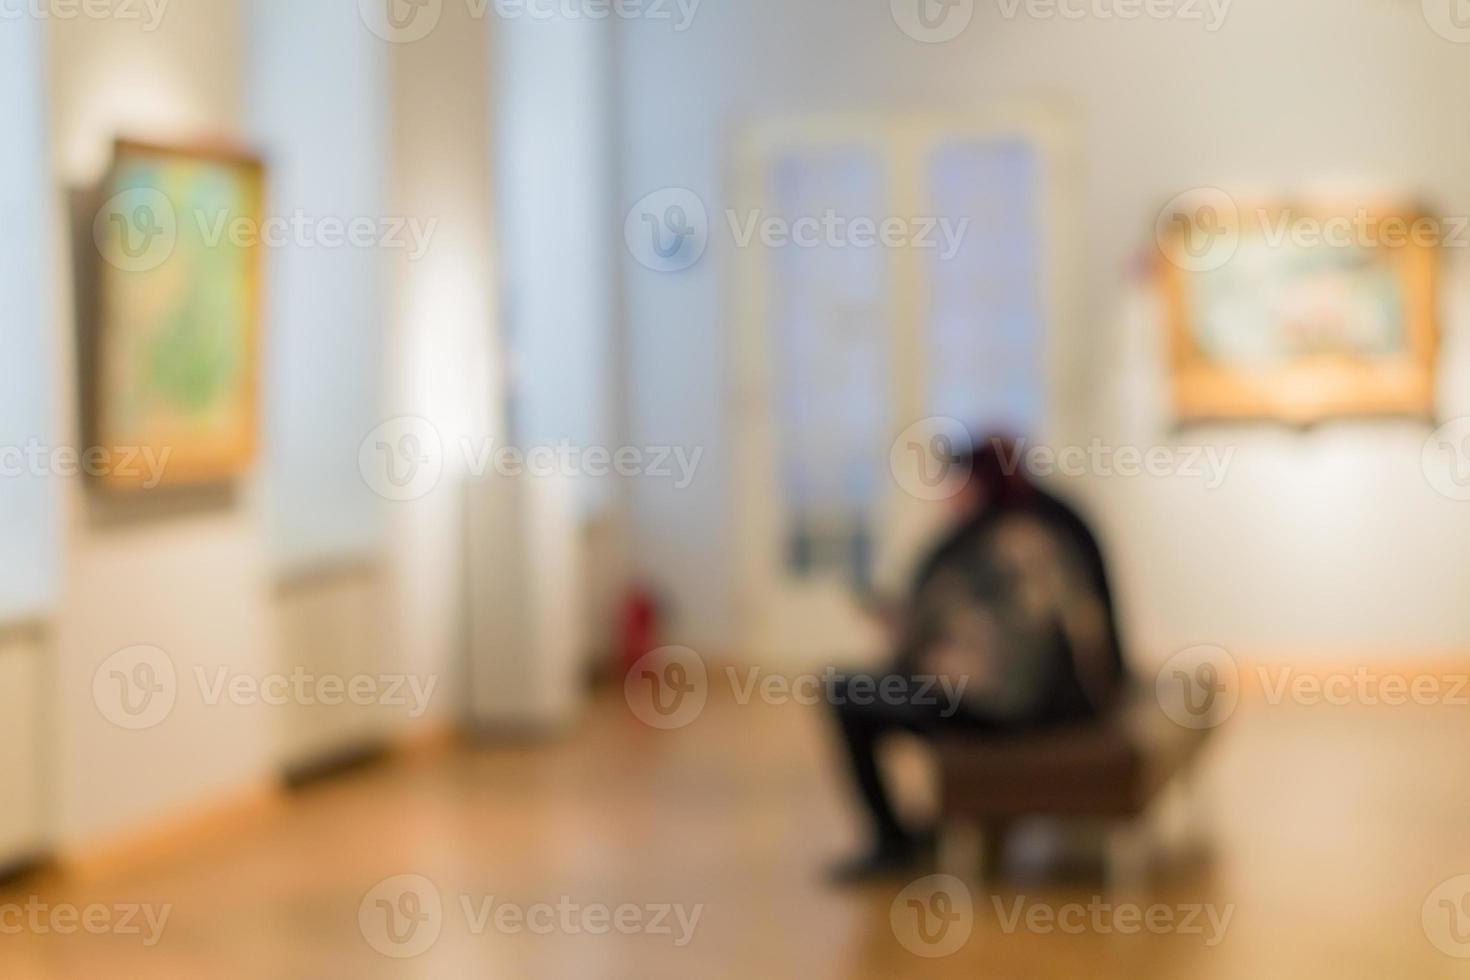 ofokuserad bild av människor som besöker konstmuseet. människor tittar på målningar på väggen foto